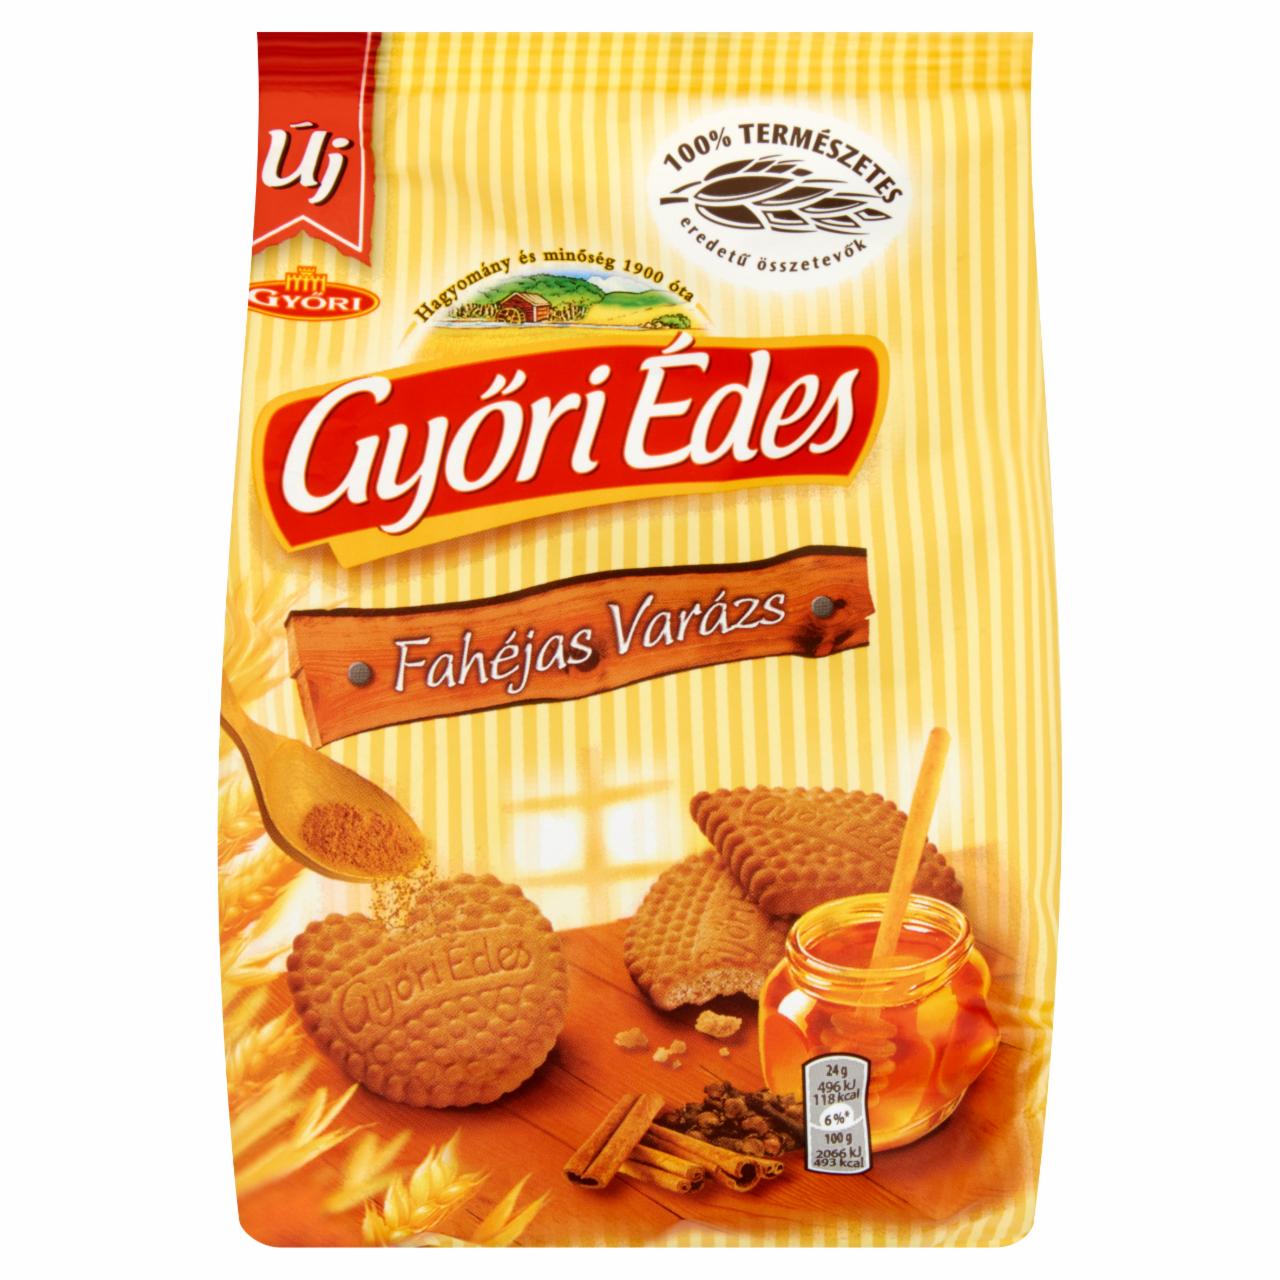 Képek - Győri Édes Fahéjas Varázs mézes, fahéjas, omlós keksz 150 g